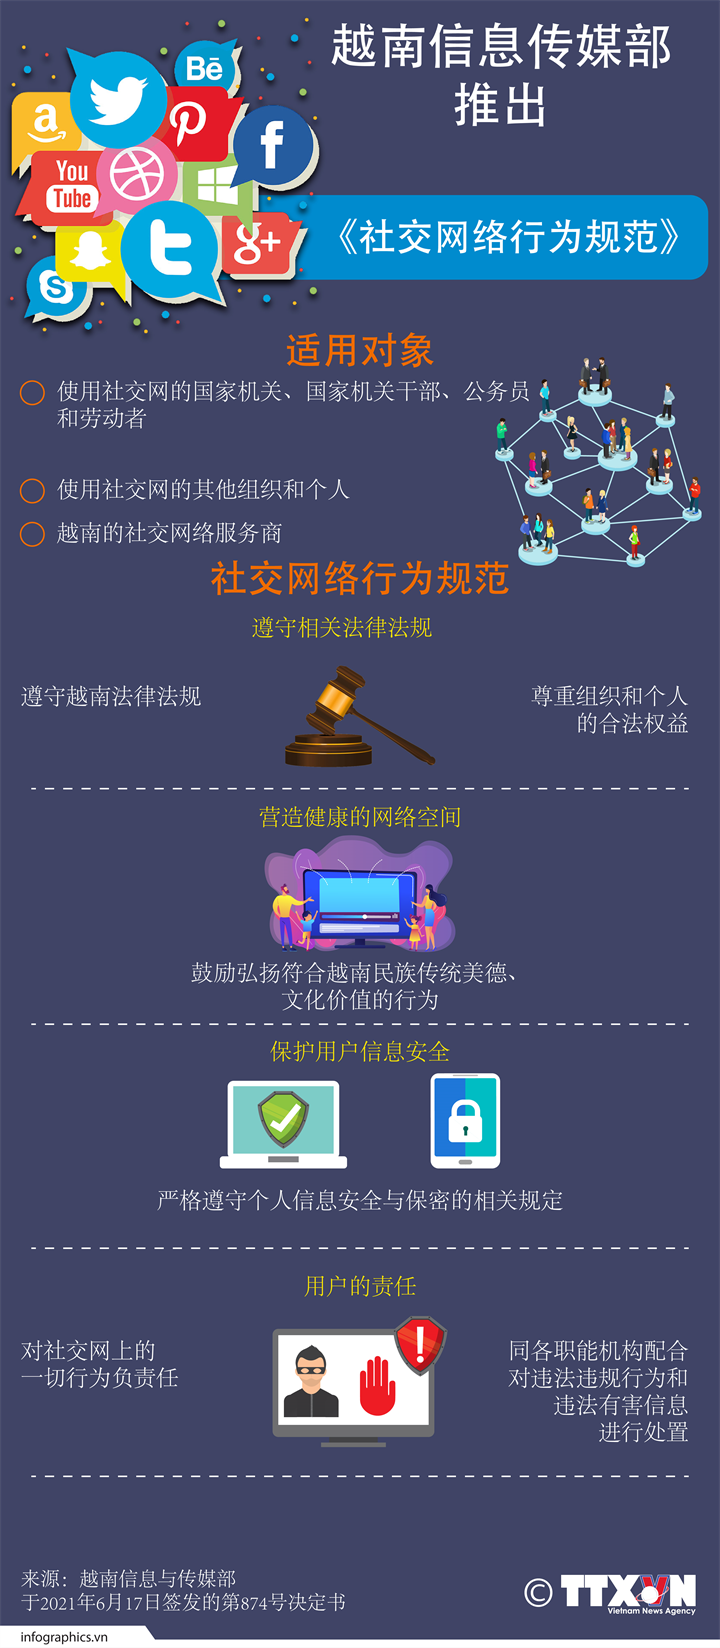 越南信息与传媒部推出《社交网络行为规范》